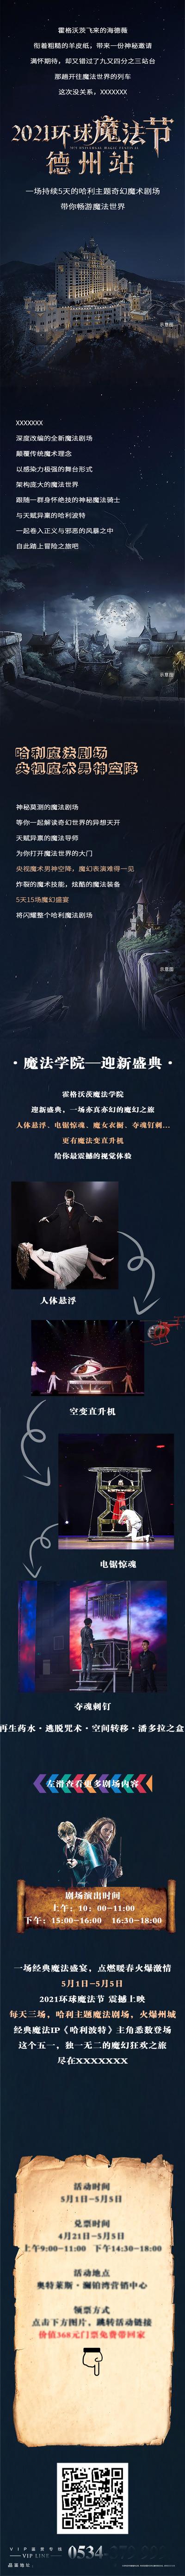 南门网 专题设计 海报 长图 魔法 剧场 表演 活动 预告 蓝金